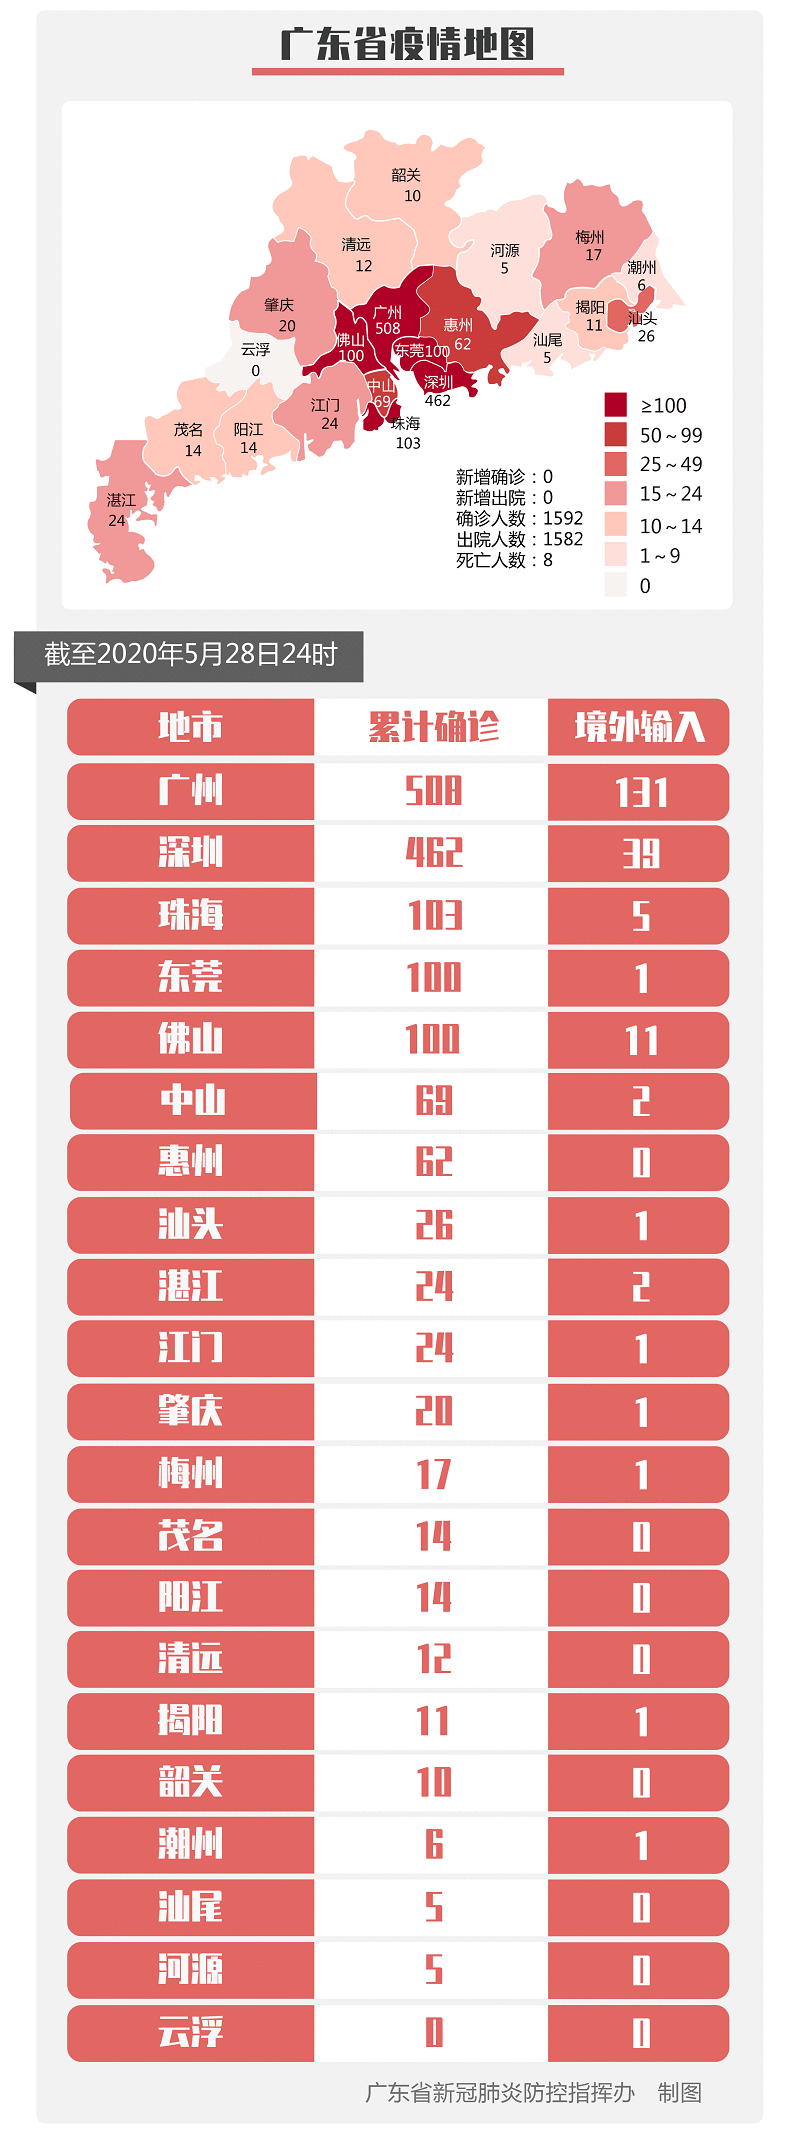 5月28日广东无新增确诊病例 新增无症状传染者1例